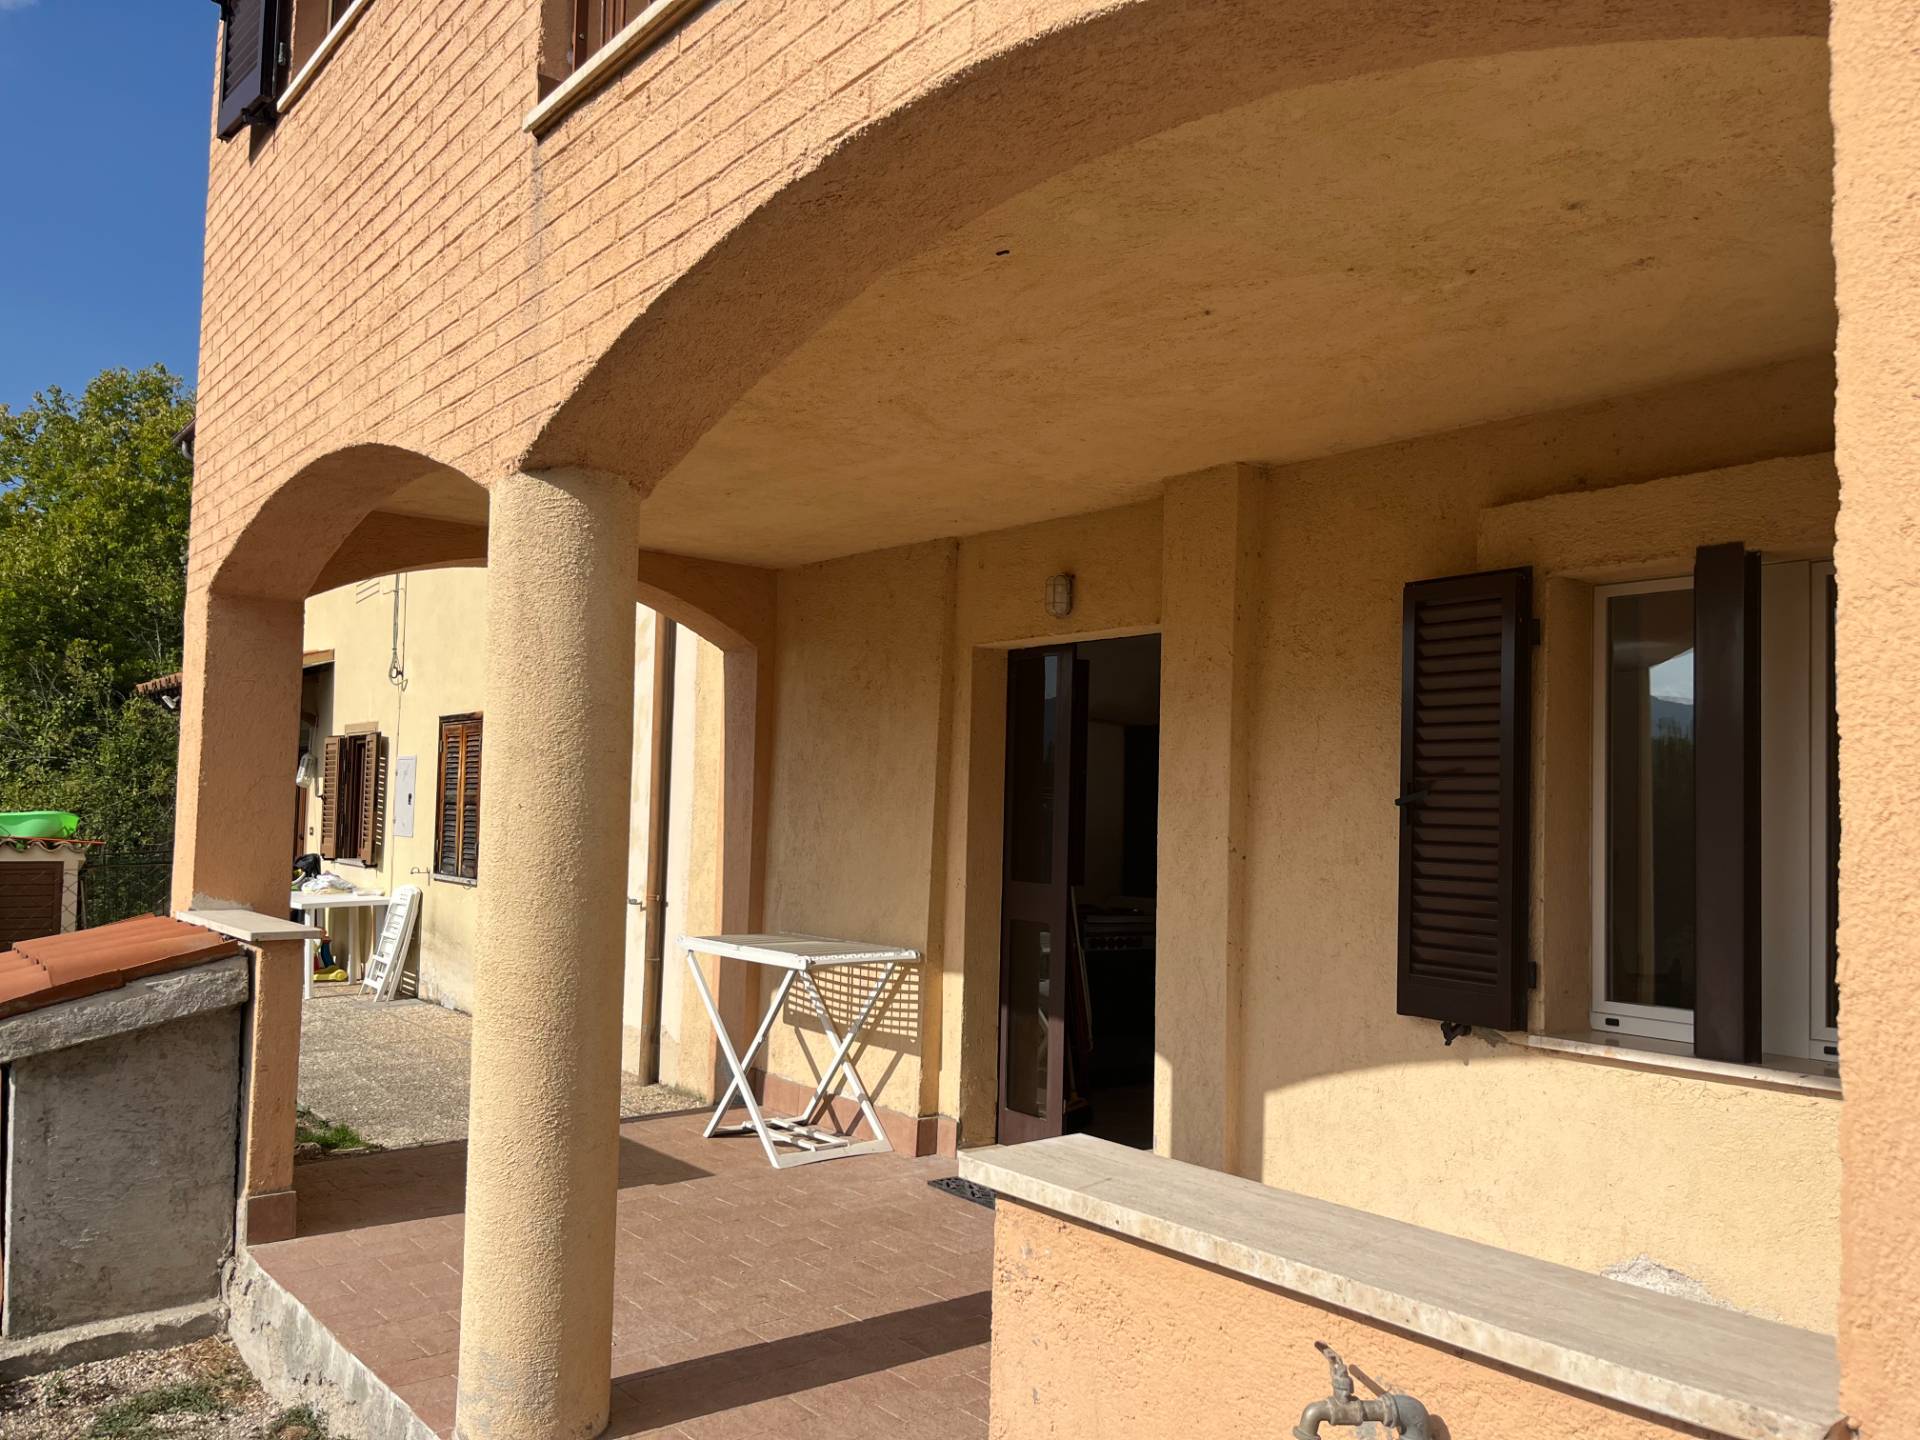 Villa a Schiera in vendita a Preci, 4 locali, prezzo € 59.000 | PortaleAgenzieImmobiliari.it